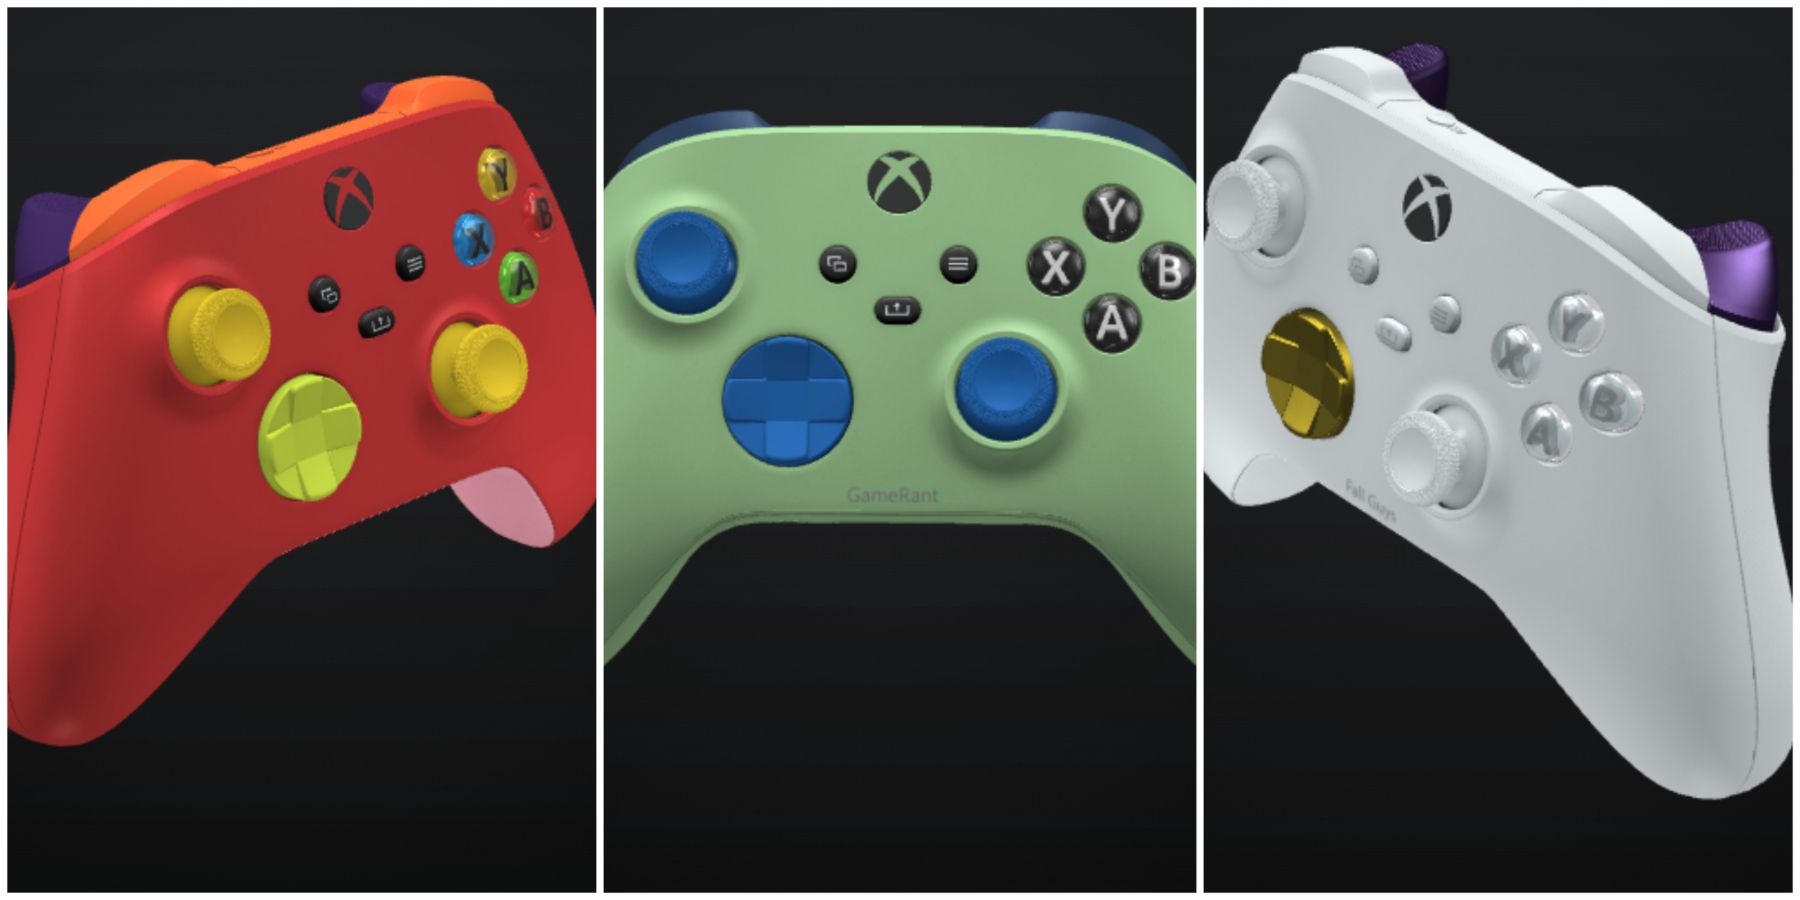 erfgoed Fokken Bier Xbox Design Lab Controller Customization Features